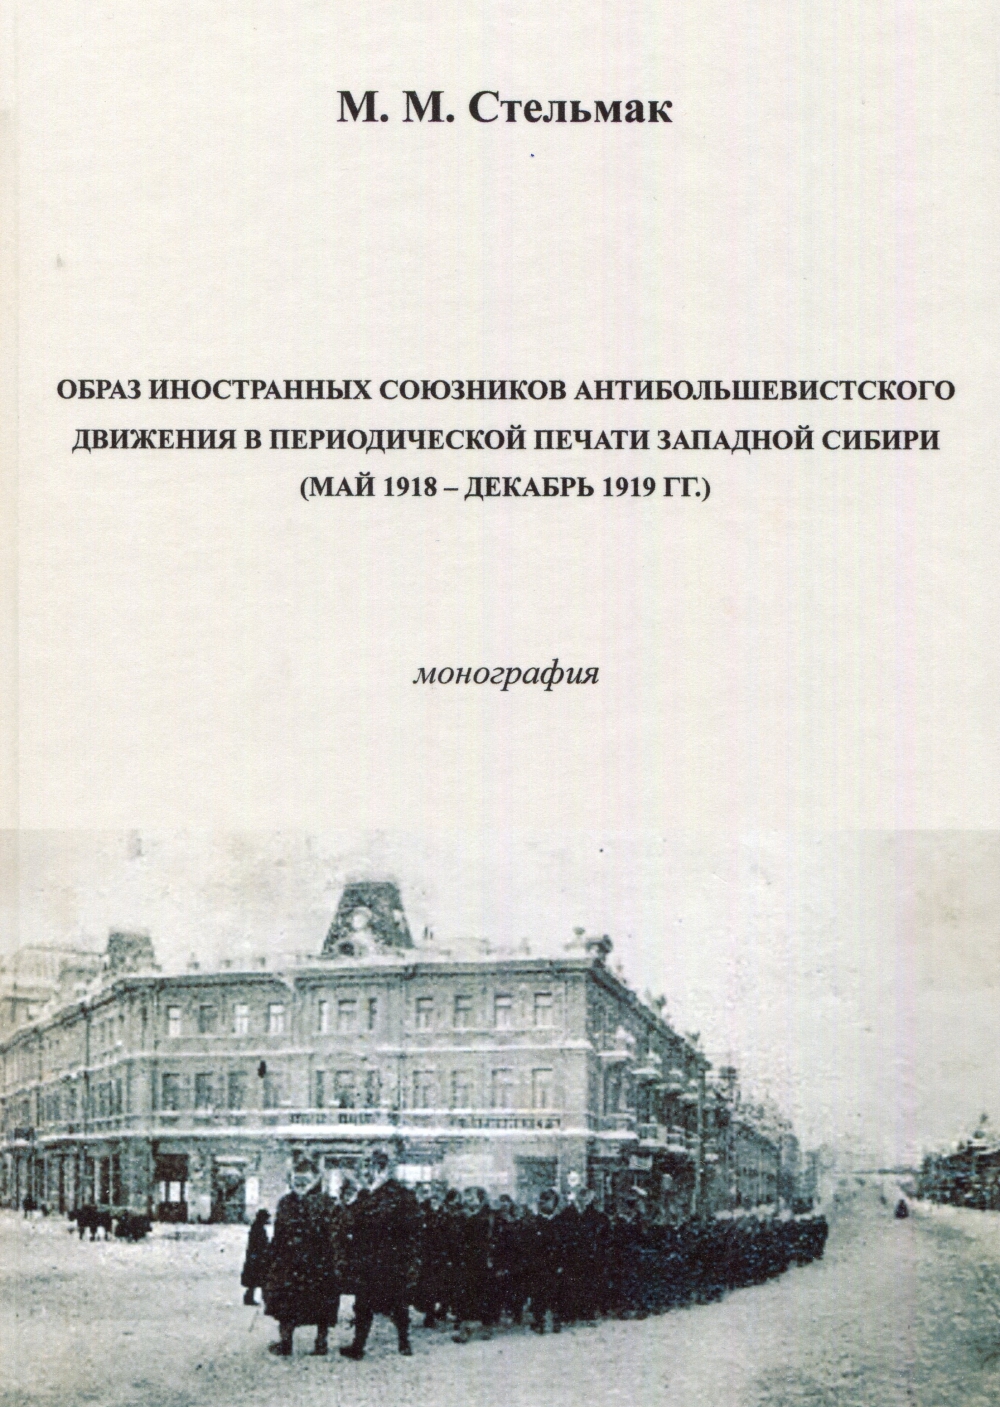 Обложка книжки. Использовано фото с британскими солдатами Миддлсекского полка. Омск, январь 1919 года.